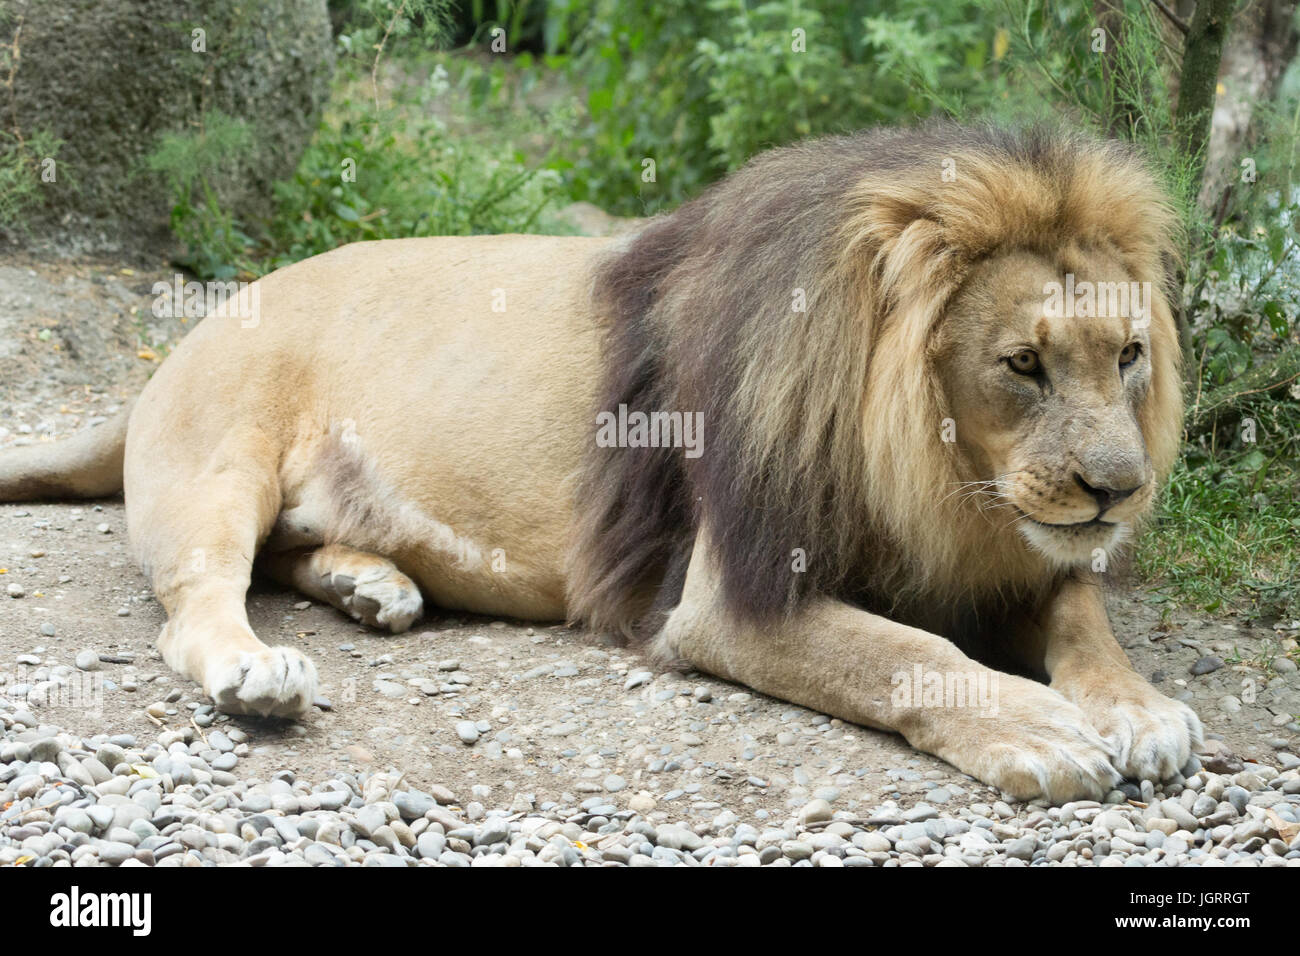 Une photographie d'un homme lion d'Afrique. Banque D'Images